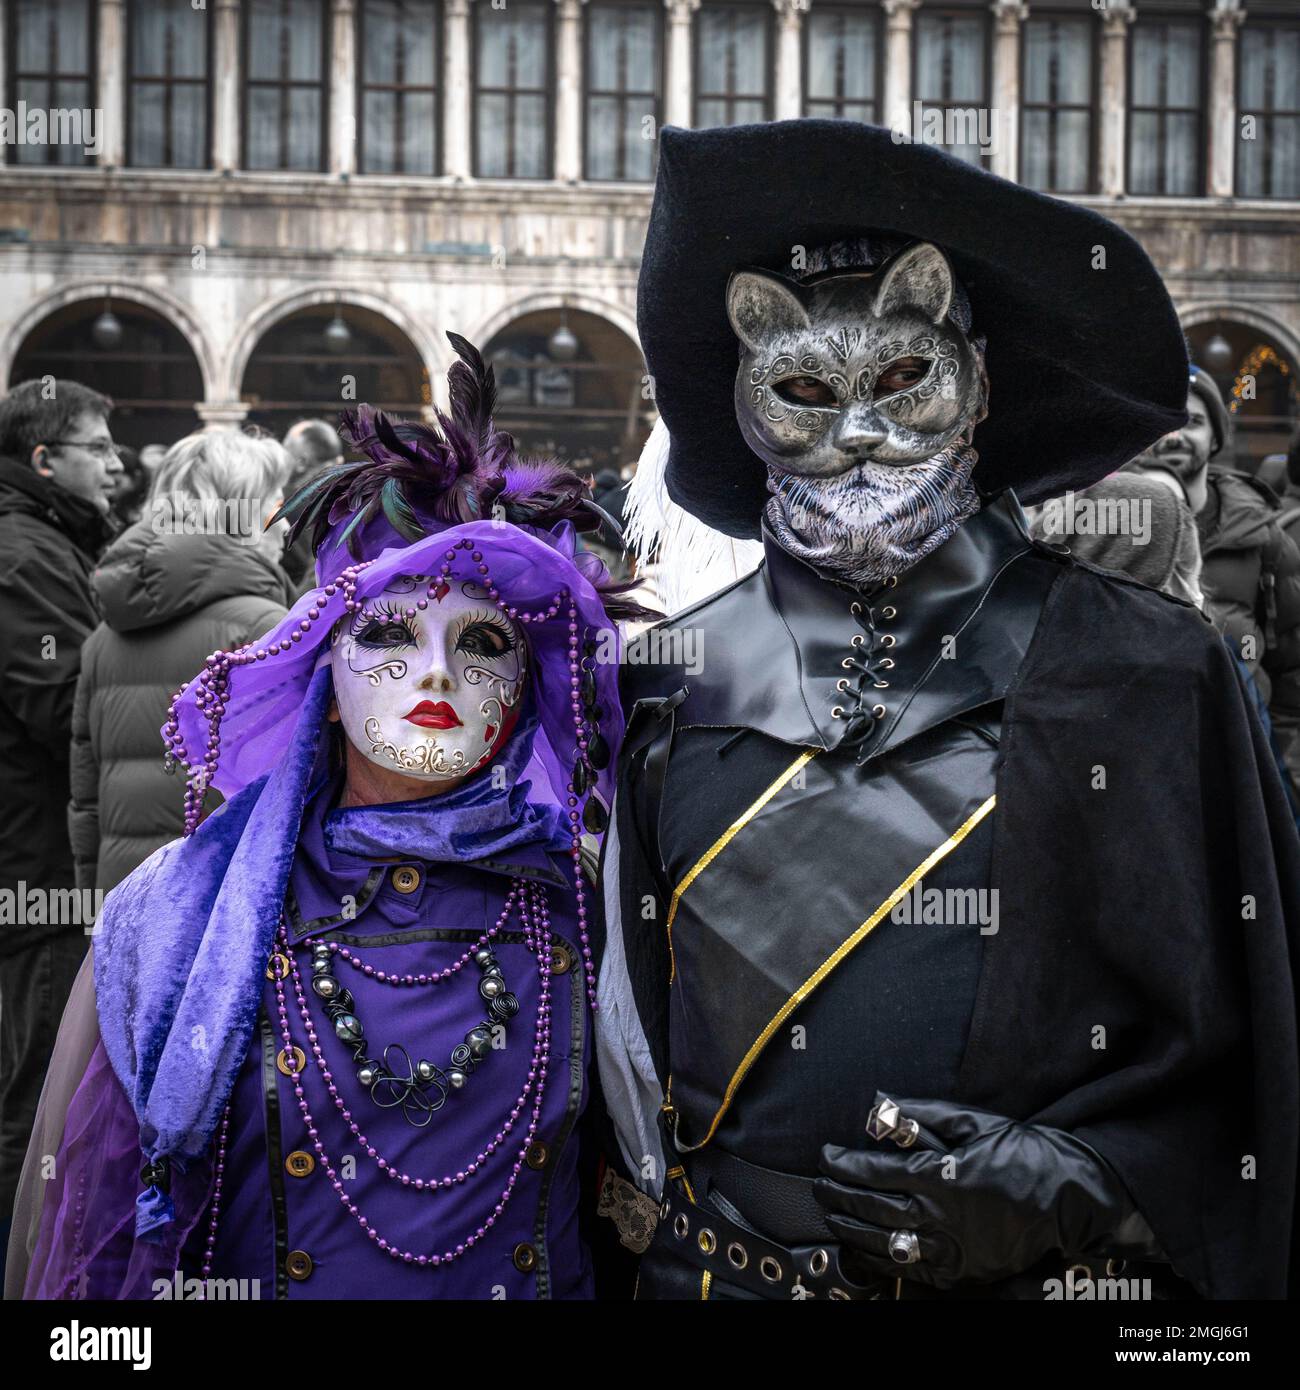 Fondos de Pantalla Máscara Carnaval y disfraces De cerca descargar imagenes